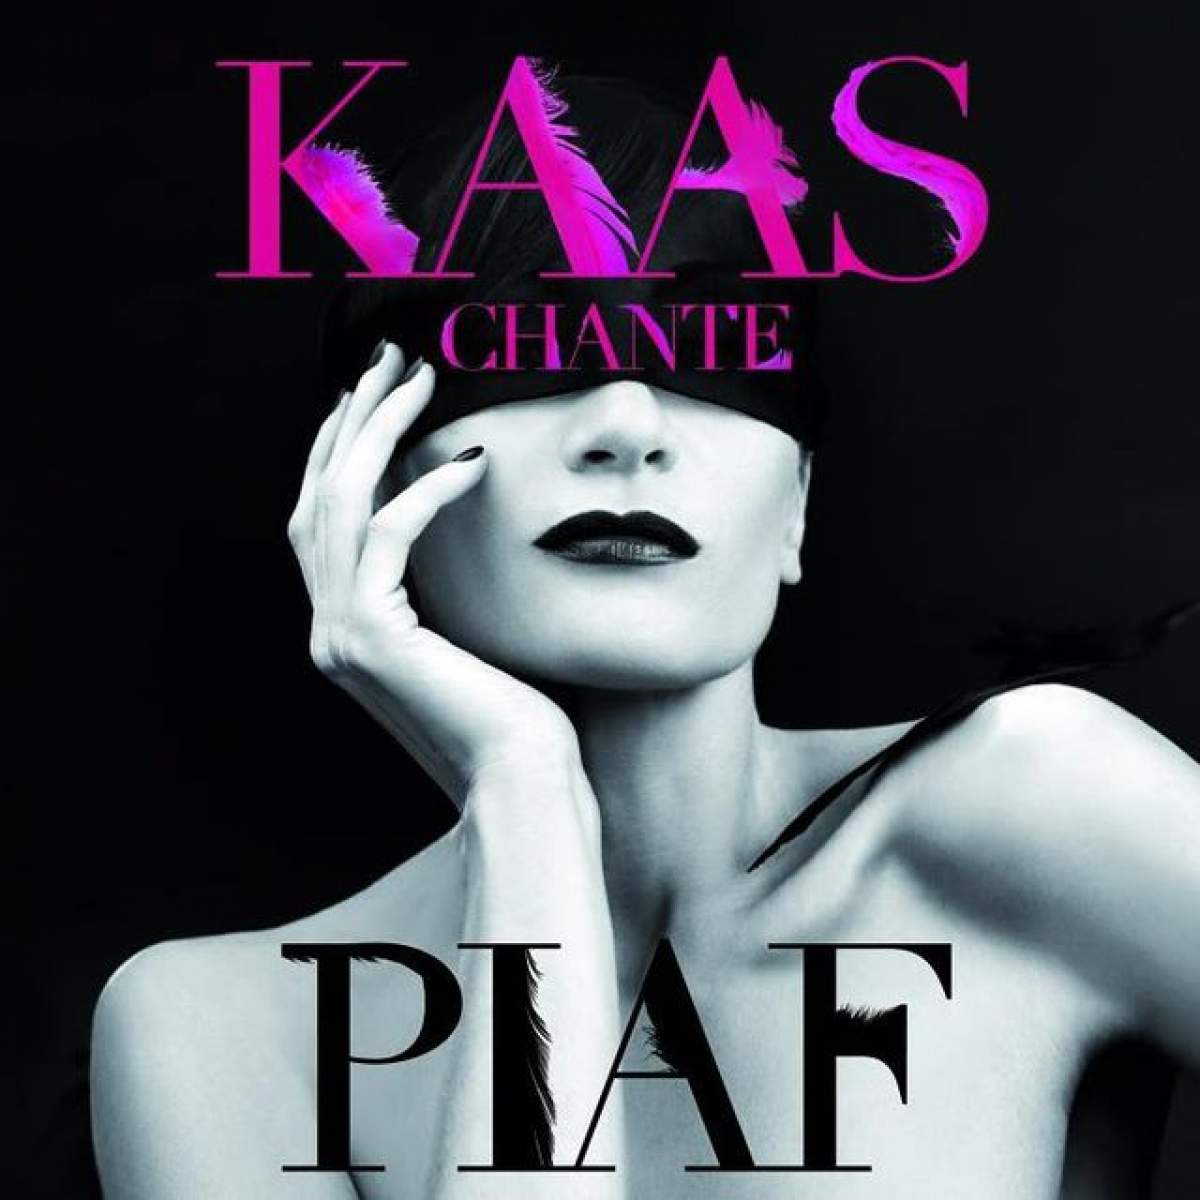 Truică, îţi place? Patricia Kaas şi-a lansat în România parfumul care îi poartă numele!